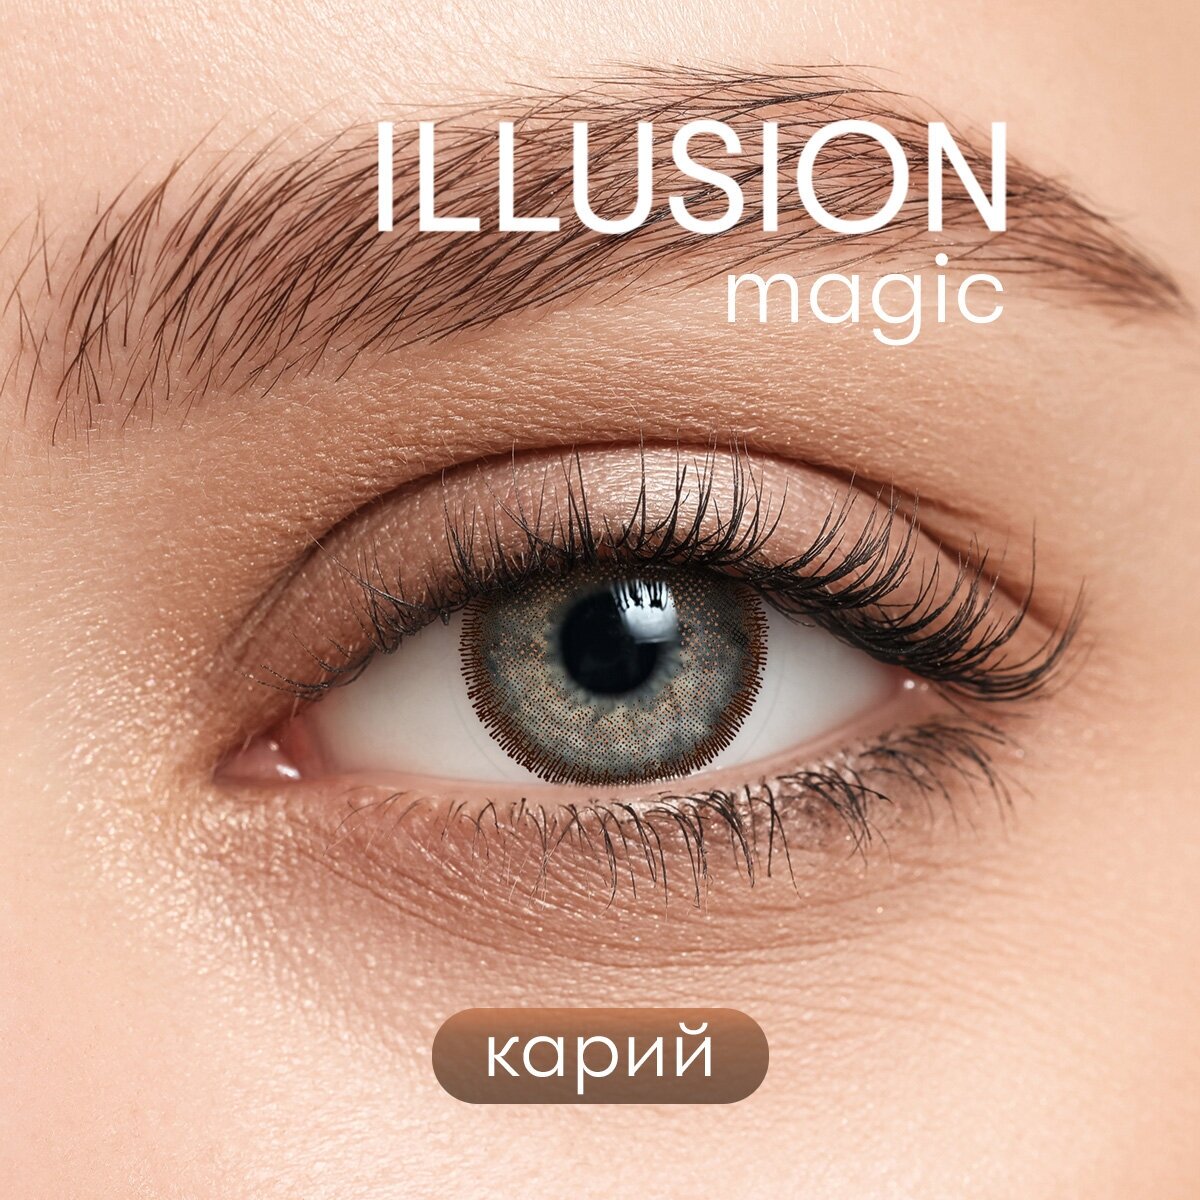 Цветные контактные линзы ILLUSION GEO Magic brown -1,0D R8.6 2шт.